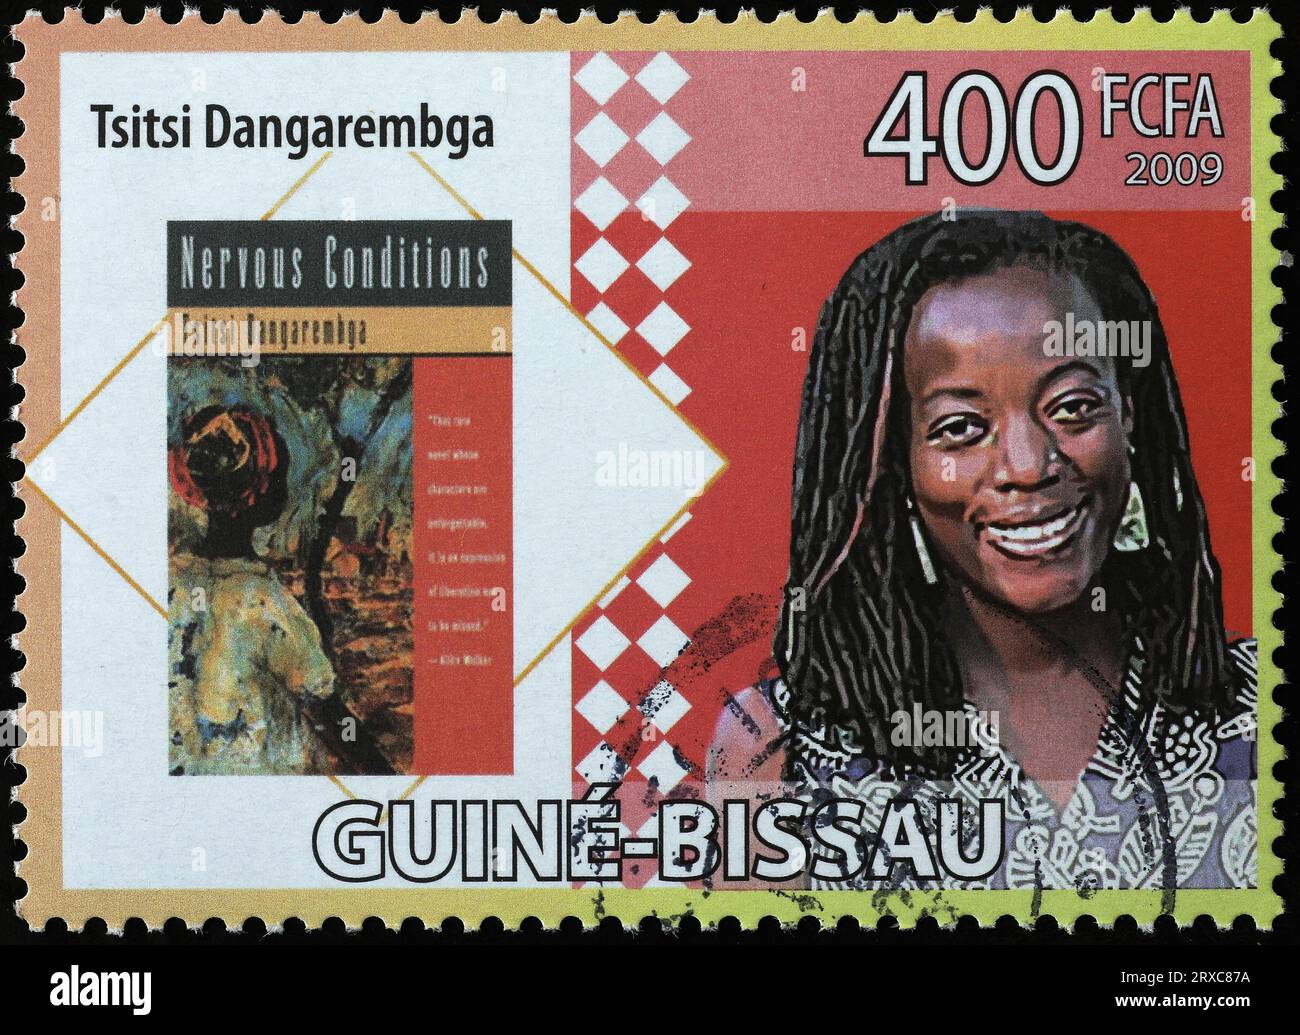 Zimbabwean novelist Tsitsi Dangarembga on postage stamp Stock Photo